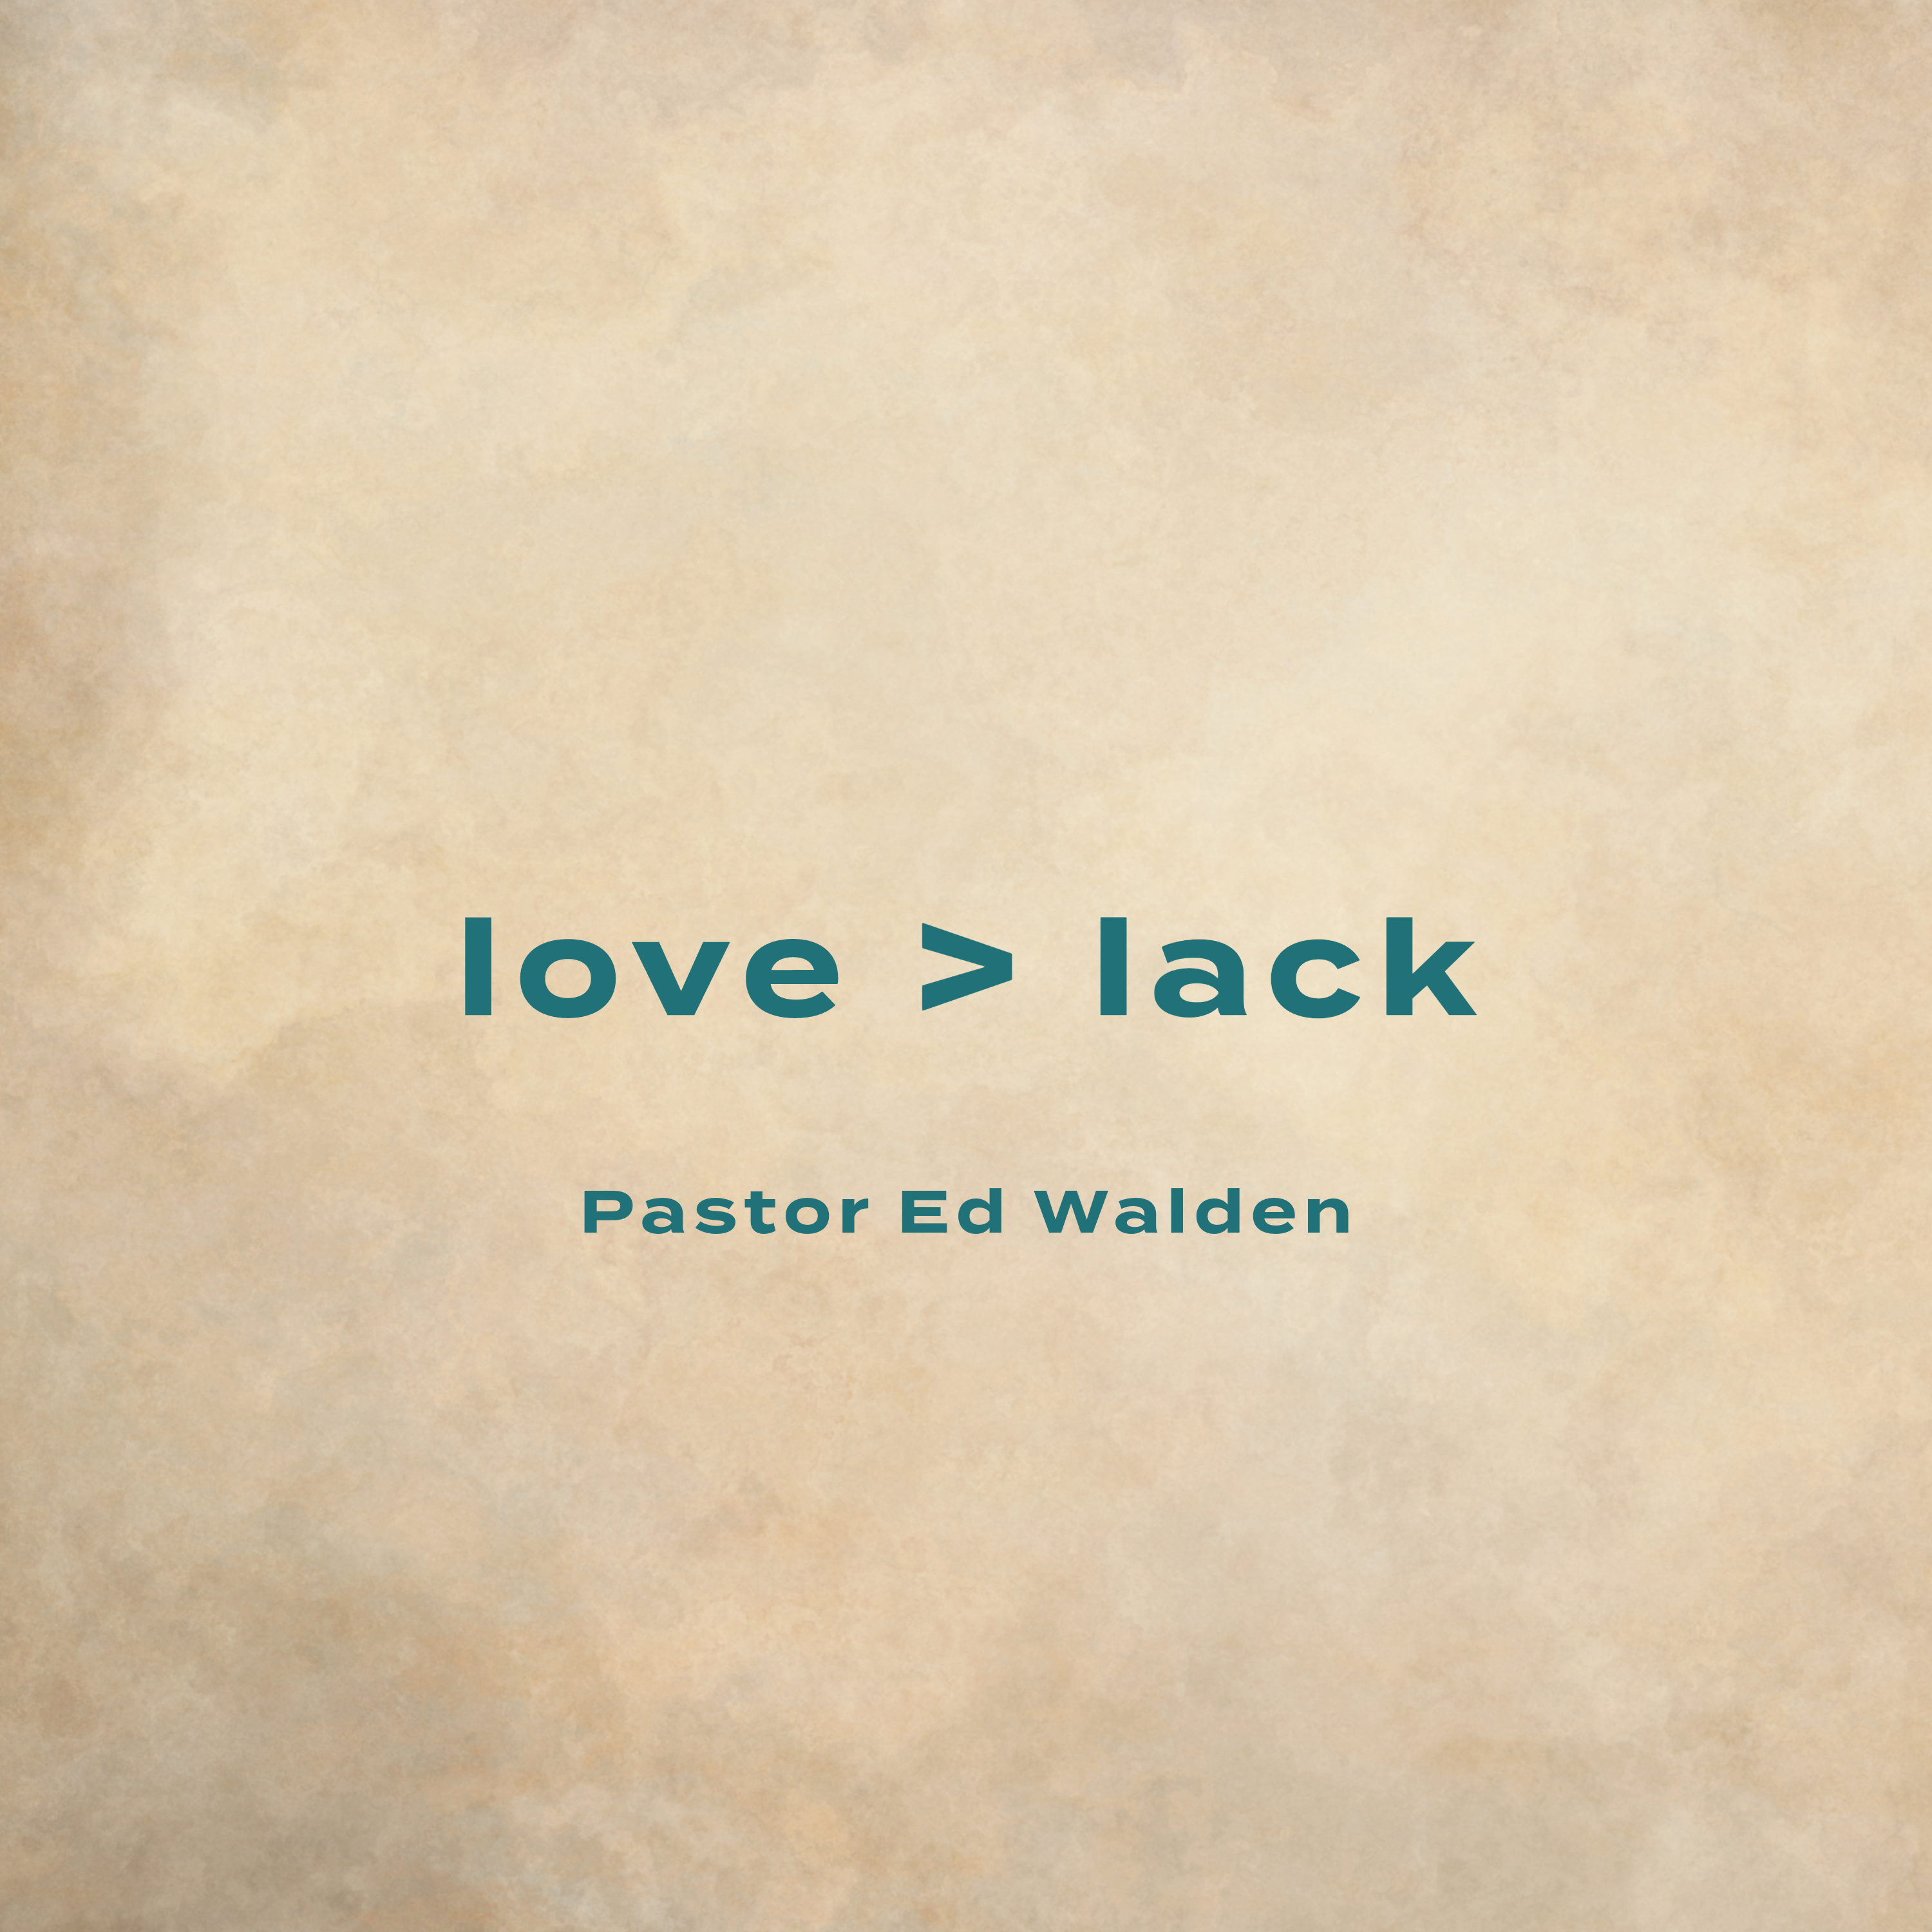 love > lack